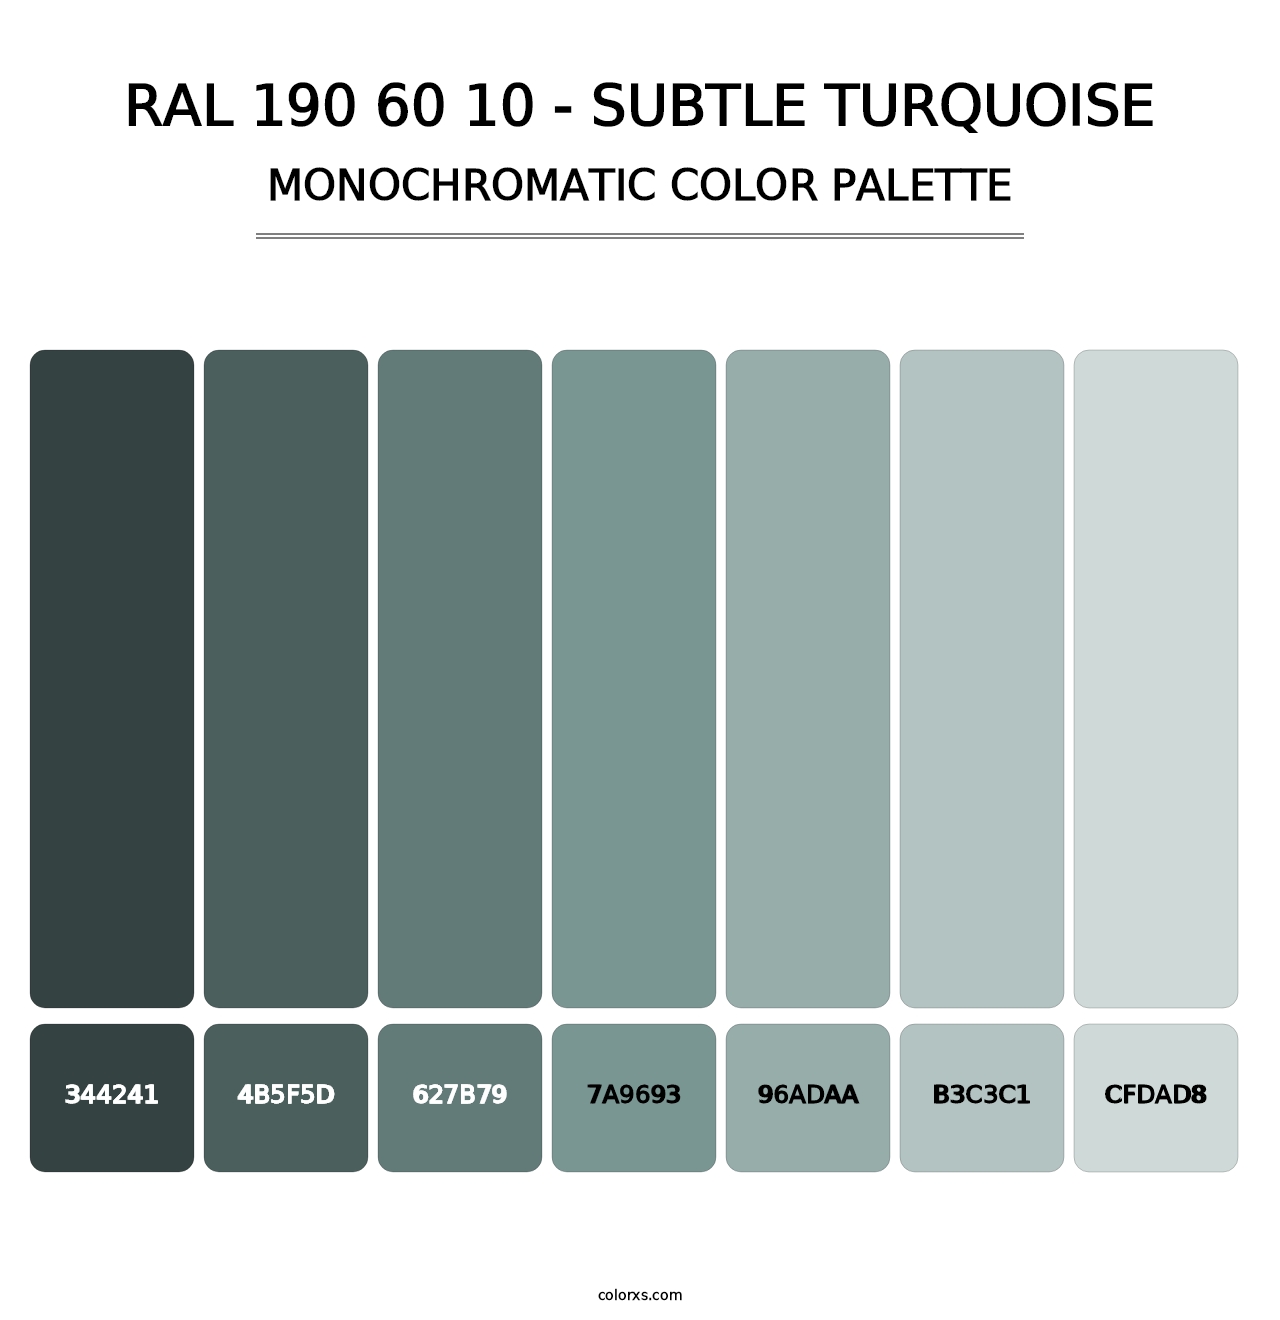 RAL 190 60 10 - Subtle Turquoise - Monochromatic Color Palette